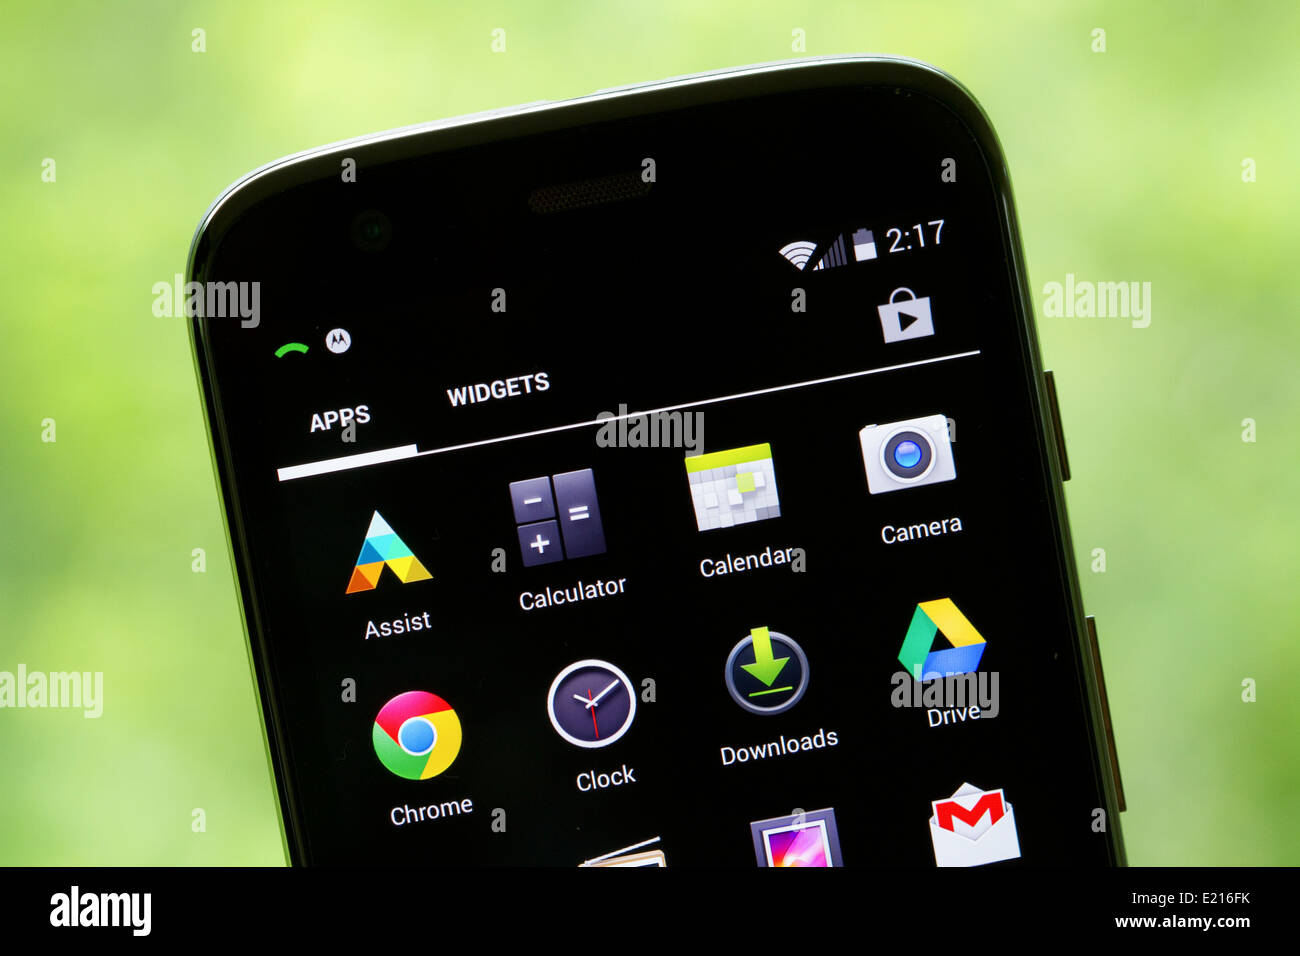 Applicazioni, applicazioni visualizzate sullo schermo di un Motorola, Moto G cellulare, telefono cellulare con sistema operativo Android. Foto Stock